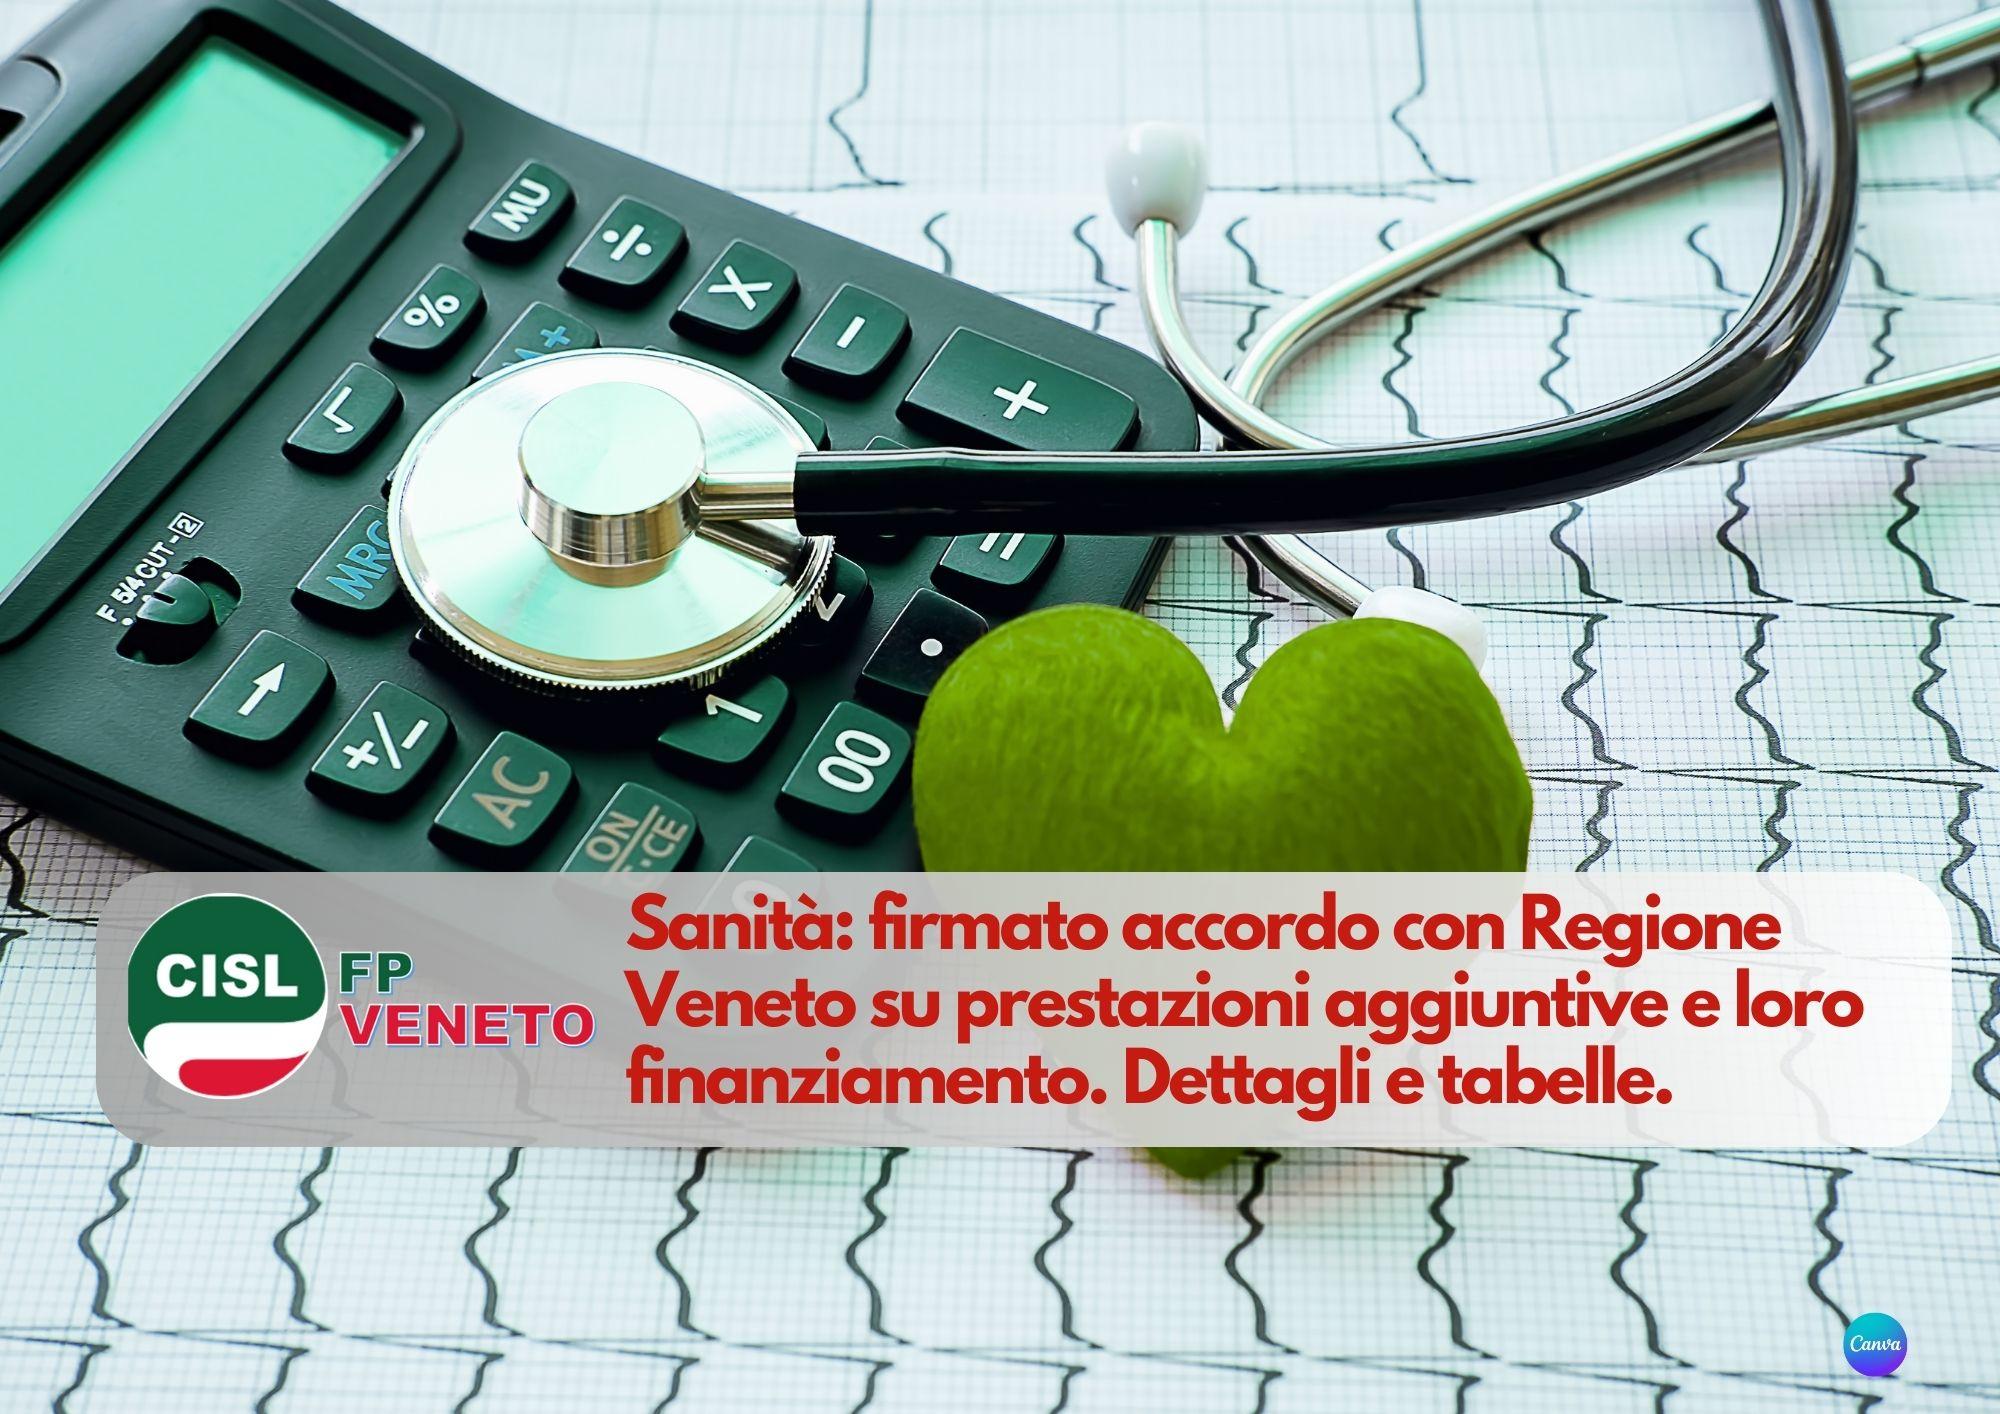 CISL FP Veneto. Sanità: firmato accordo Regione Veneto prestazioni aggiuntive e loro finanziamento